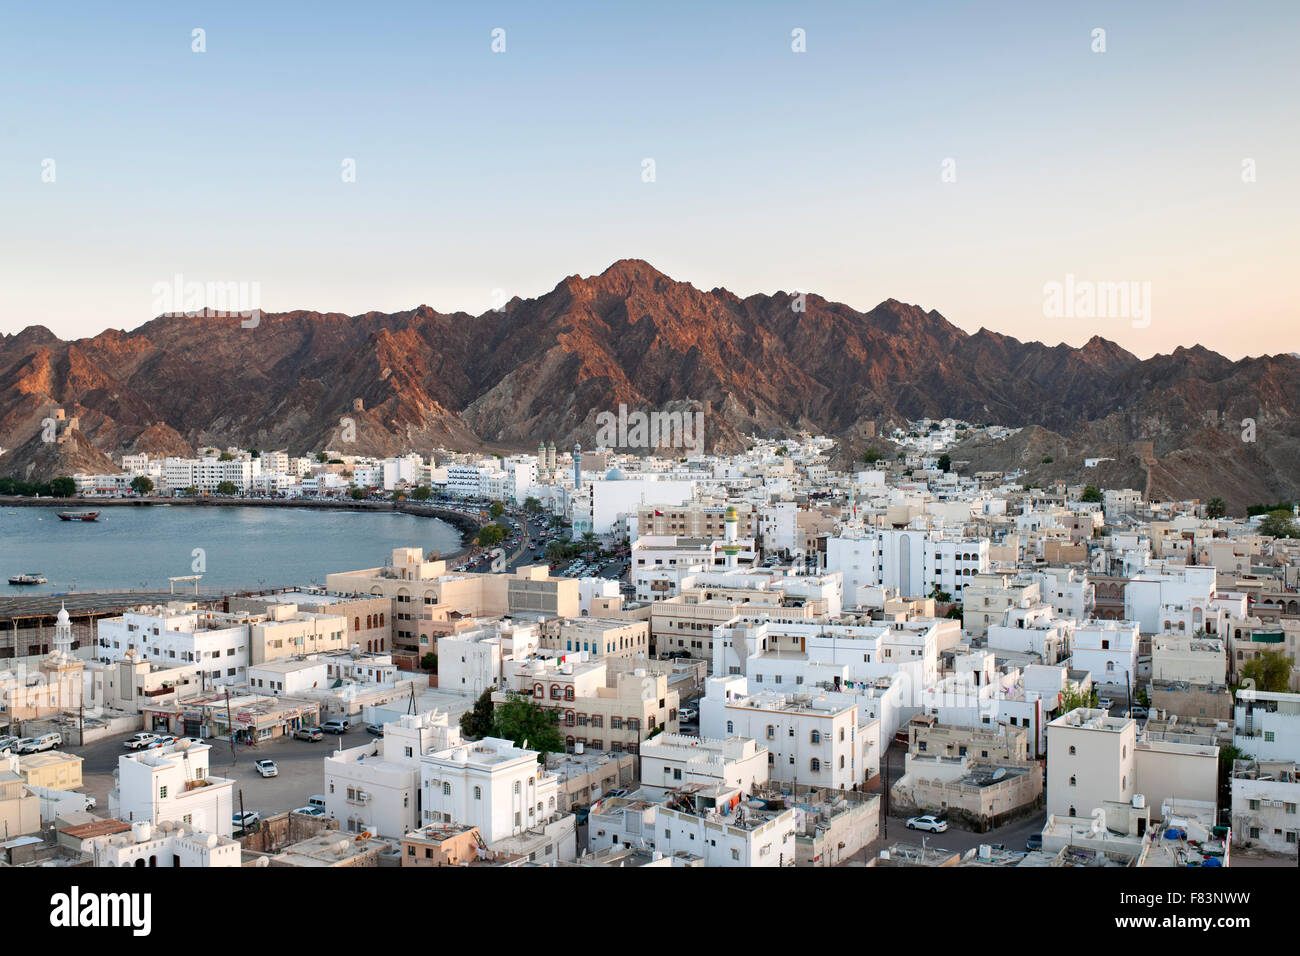 Abenddämmerung Blick auf den Stadtteil Mutrah und die umliegenden Berge in Muscat, der Hauptstadt des Sultanats Oman. Stockfoto